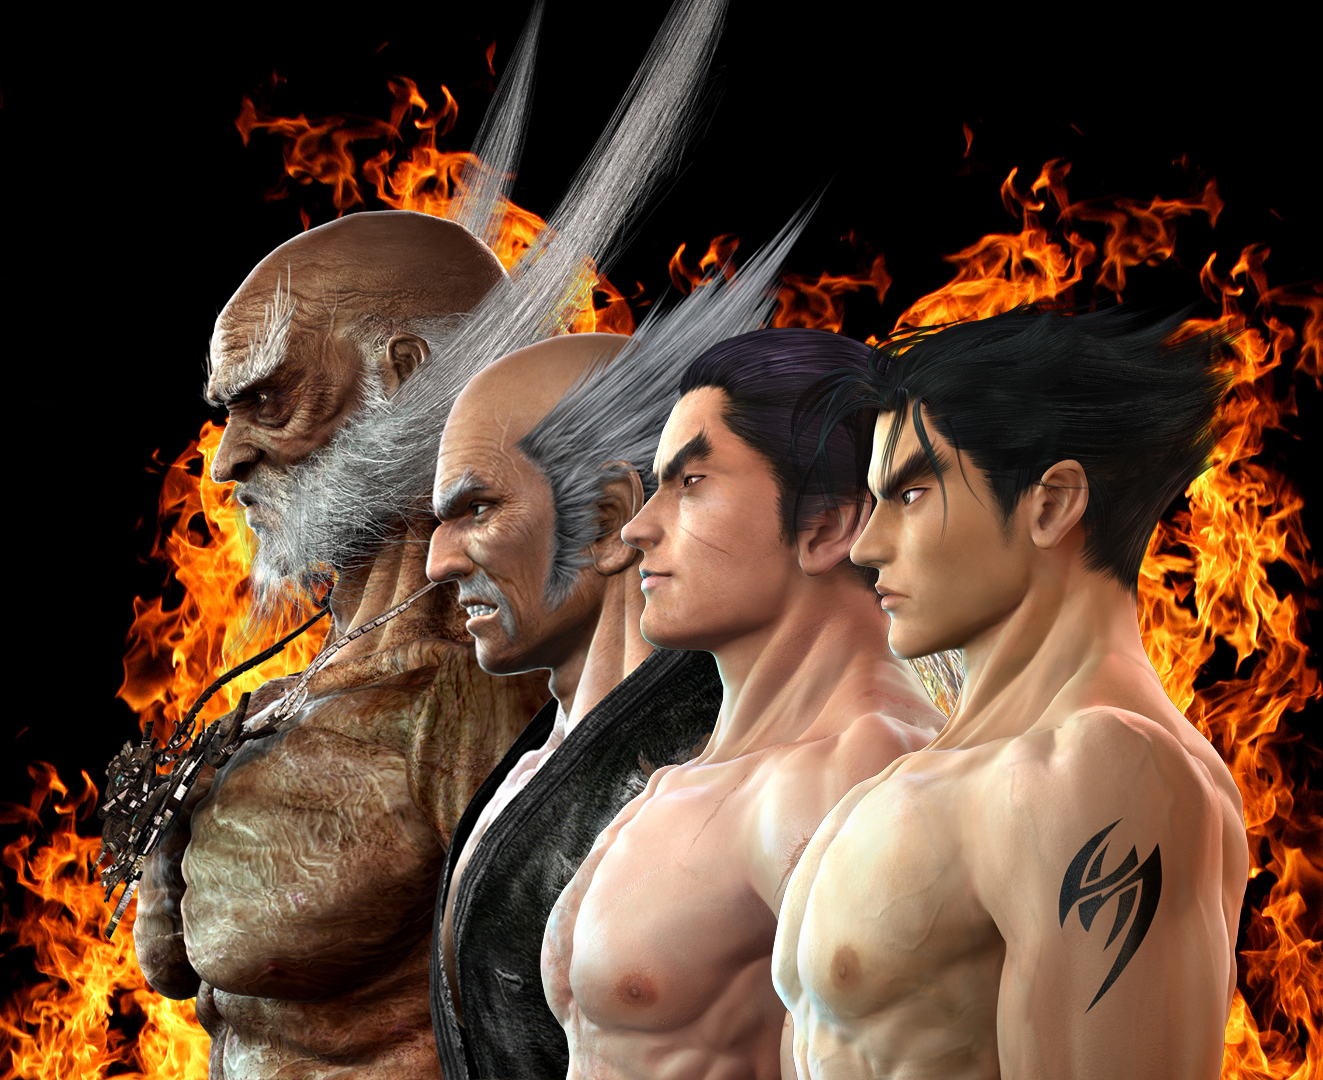 Tekken Games HD Wallpapers | Tekken Games Desktop Images | Cool ...